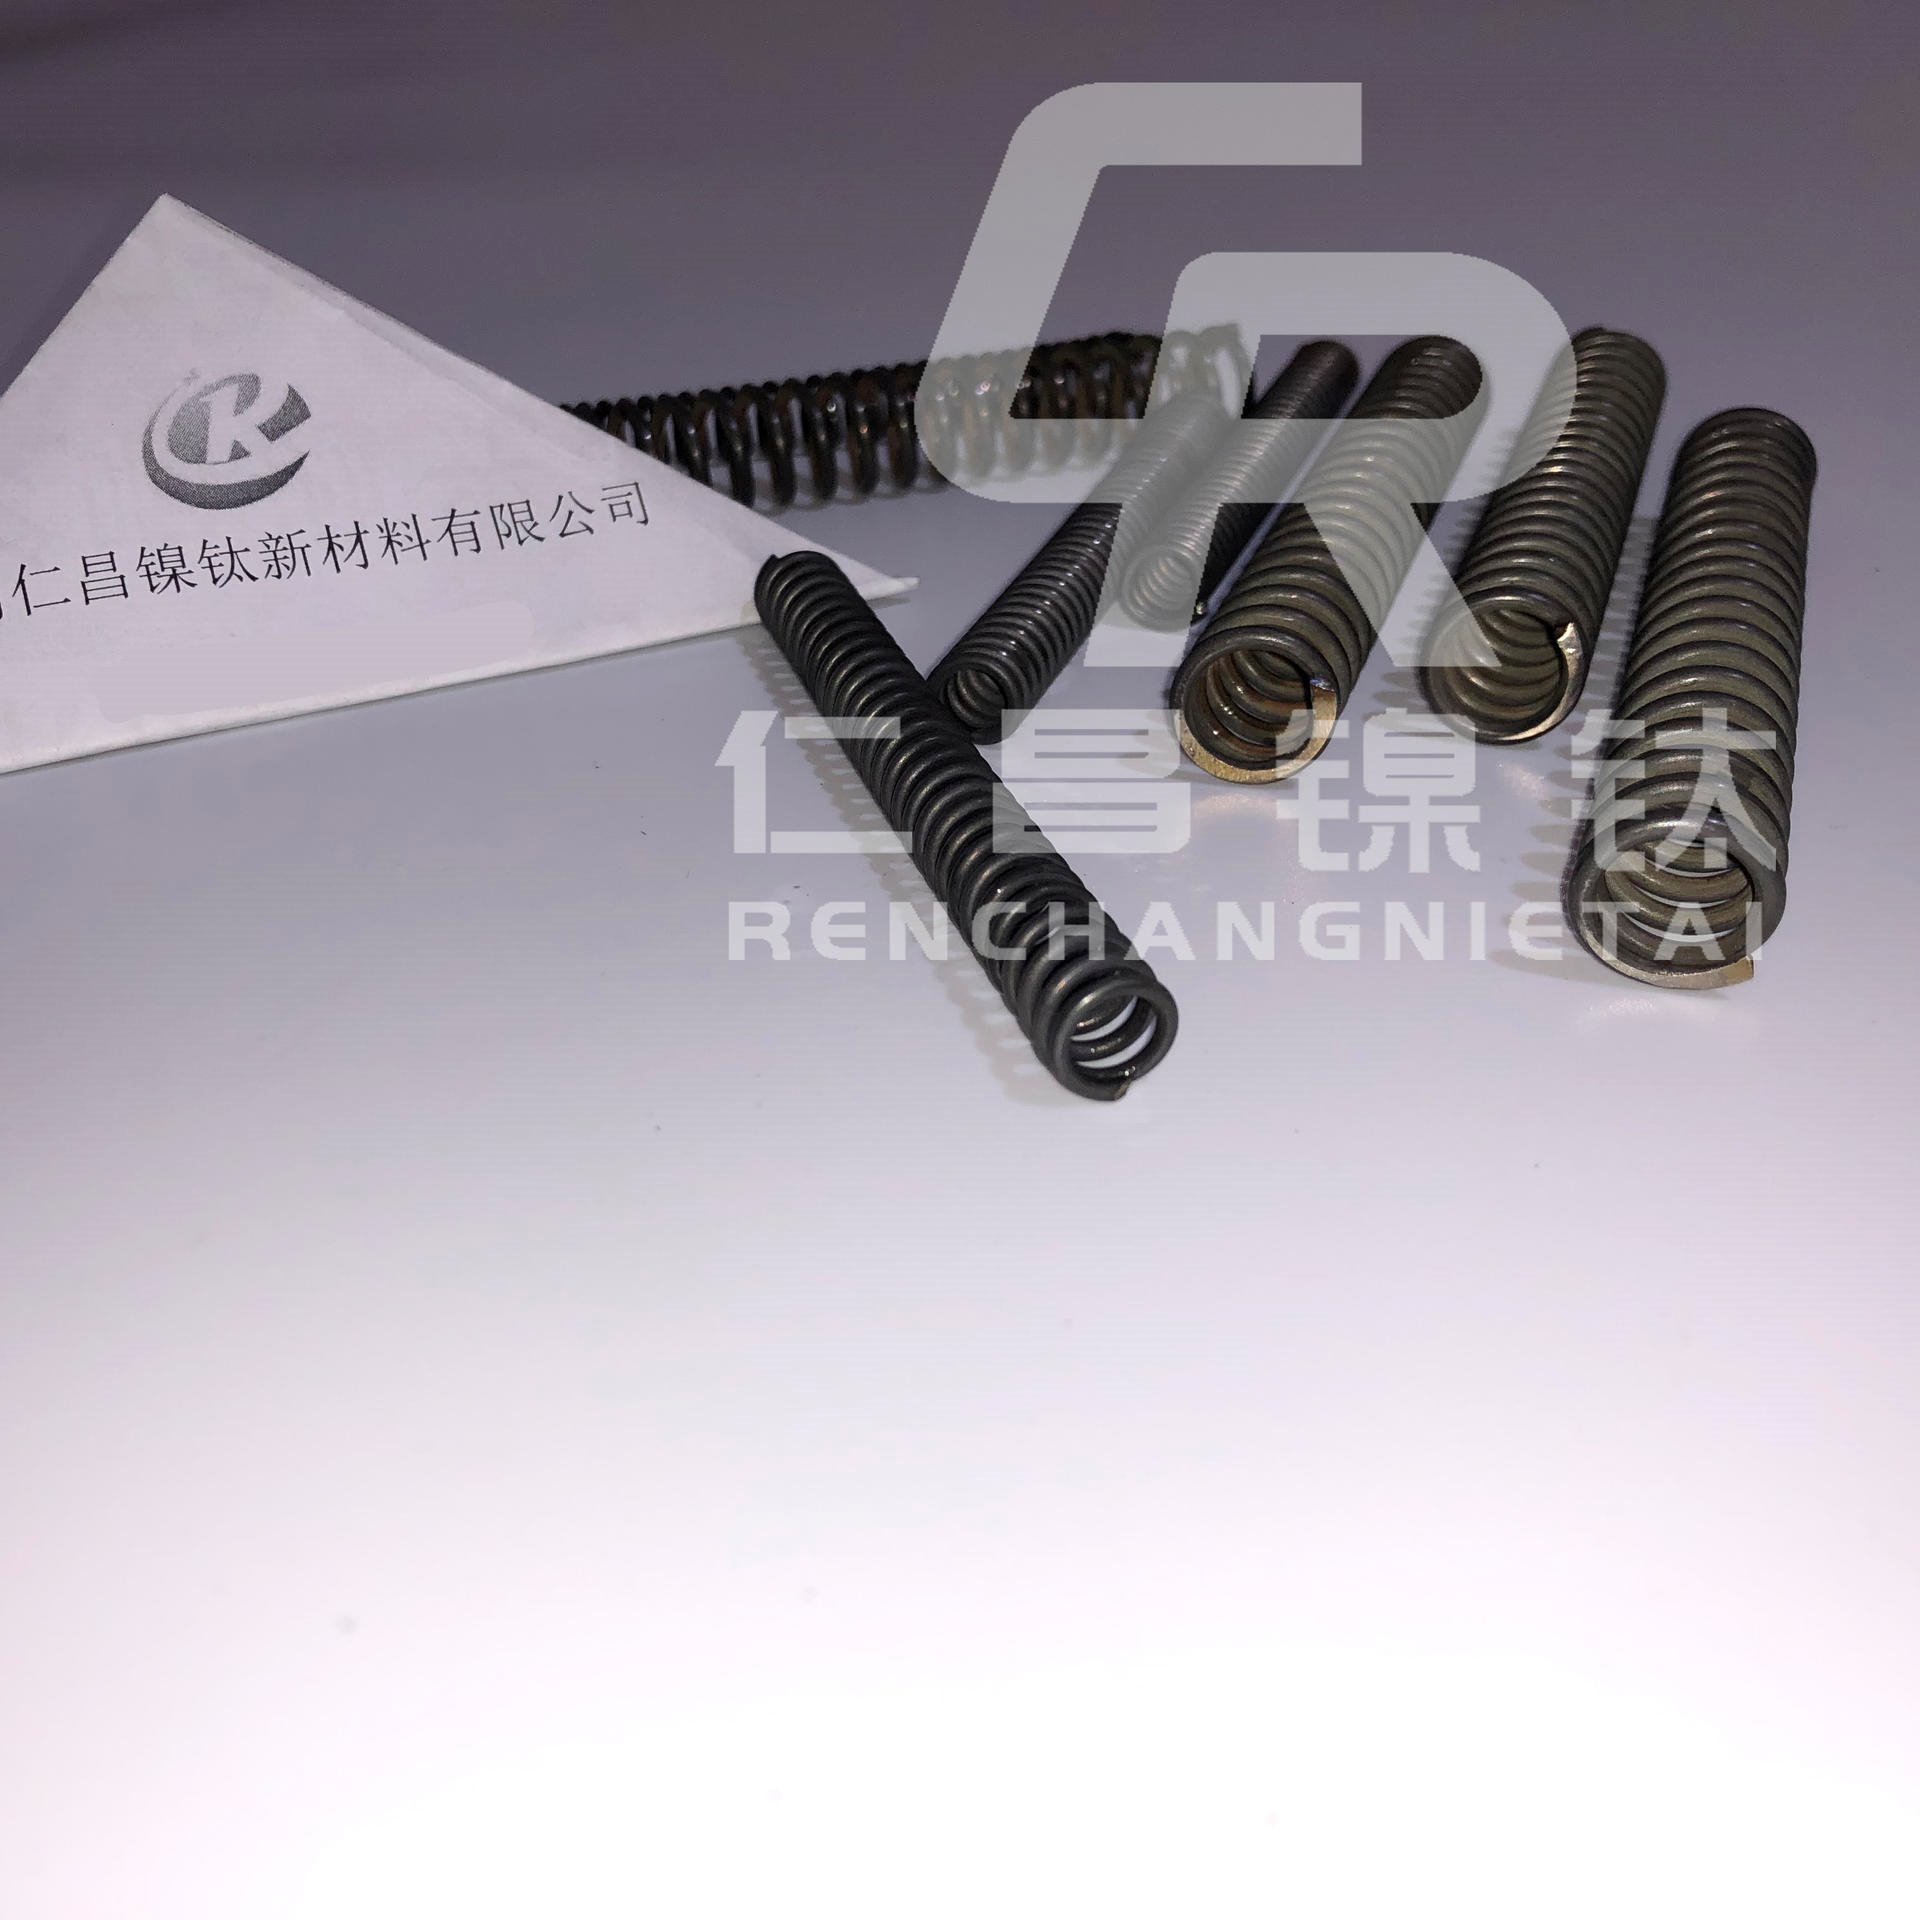 仁昌镍钛供应温控弹簧优质功能弹簧镍钛驱动装置镍钛合金定型